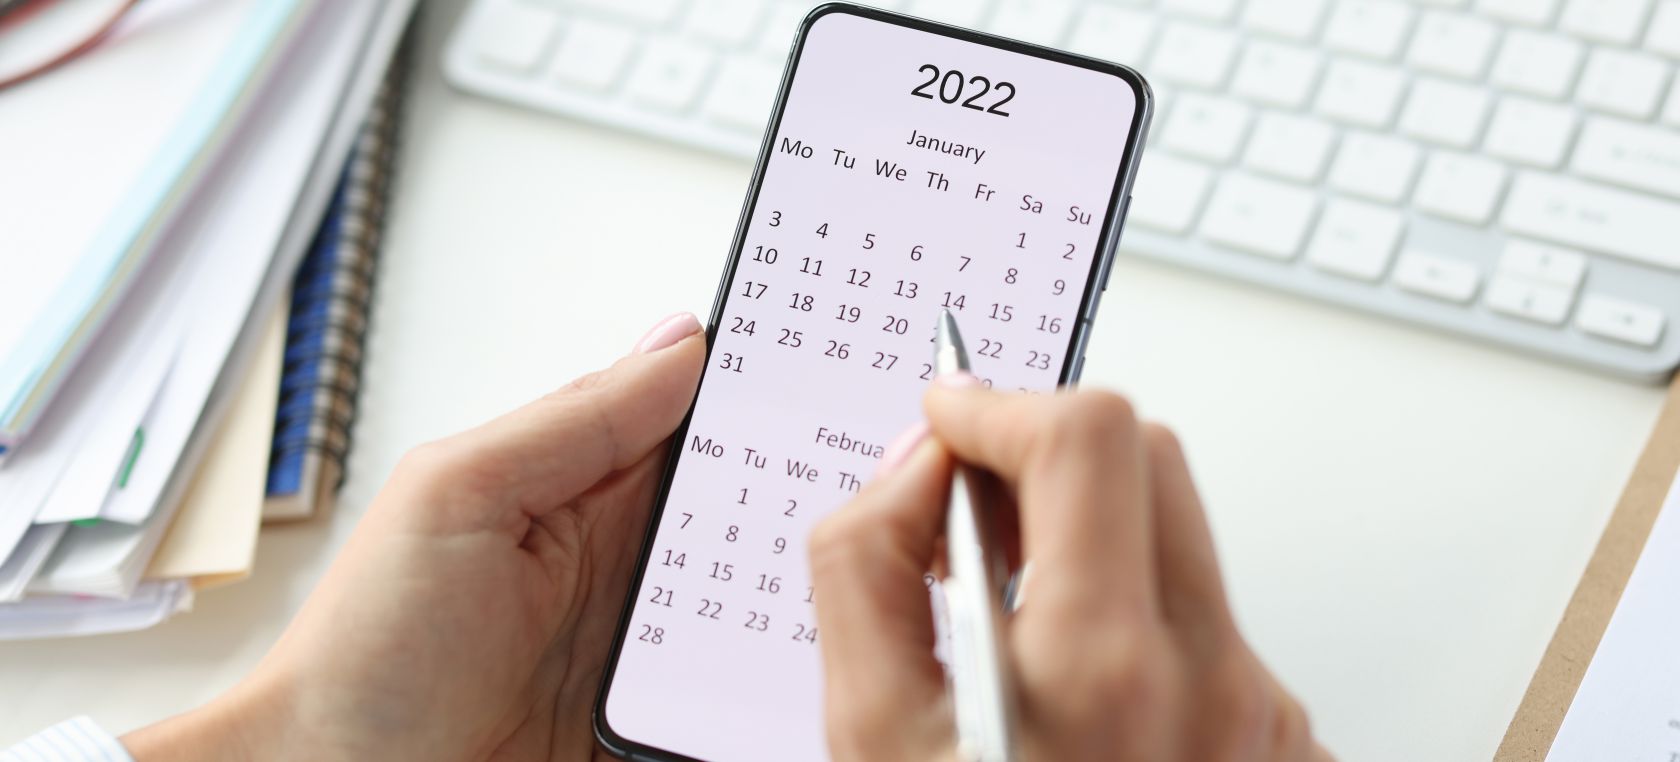 Calendario laboral de 2022: así caerán los festivos, los puentes y la Semana Santa este año